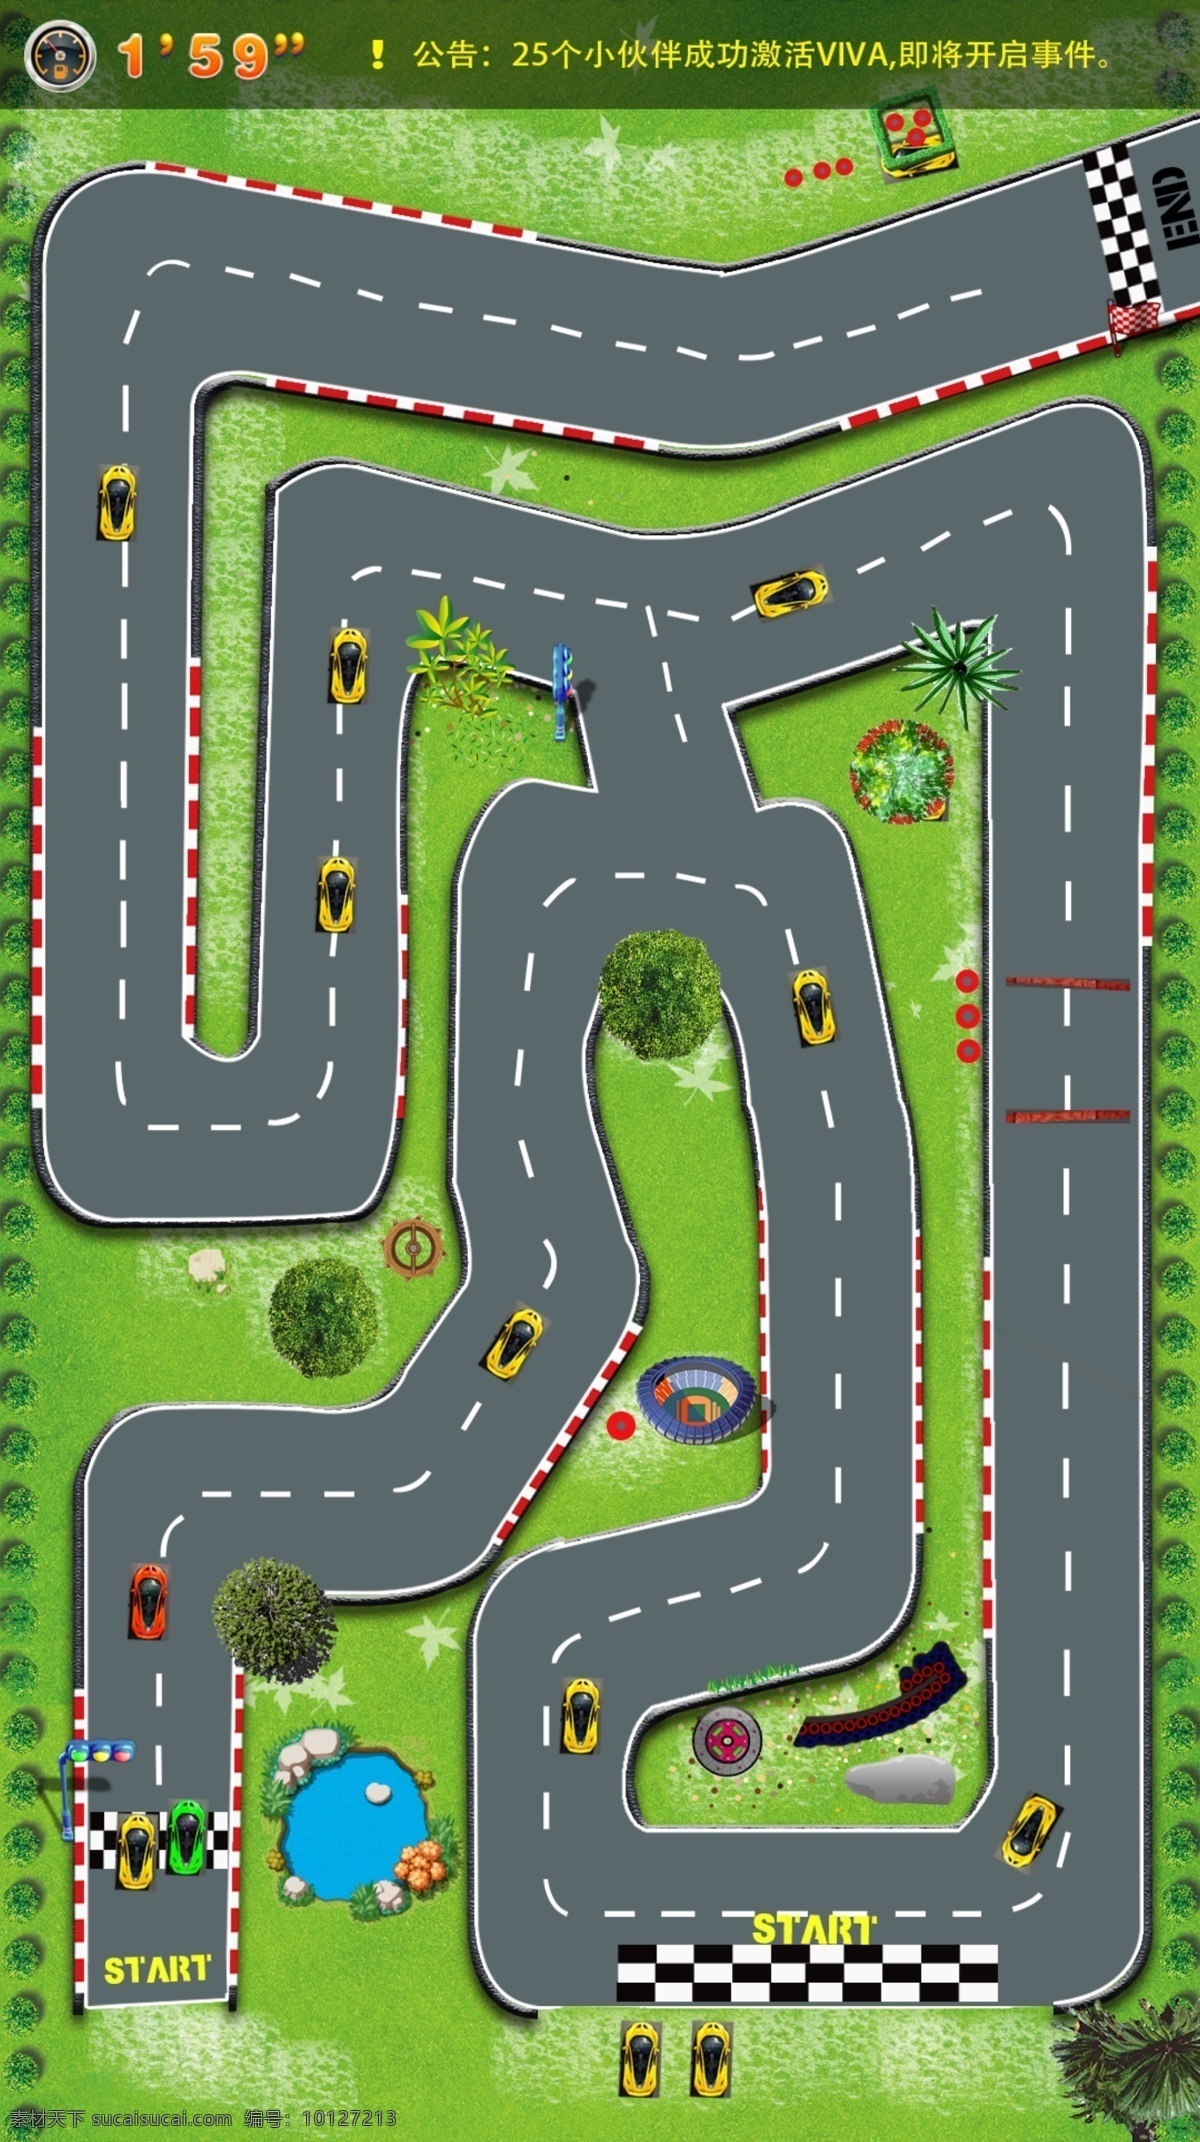 赛车 游戏 跑道 界面 设计图 赛道 绿色 树 竞赛